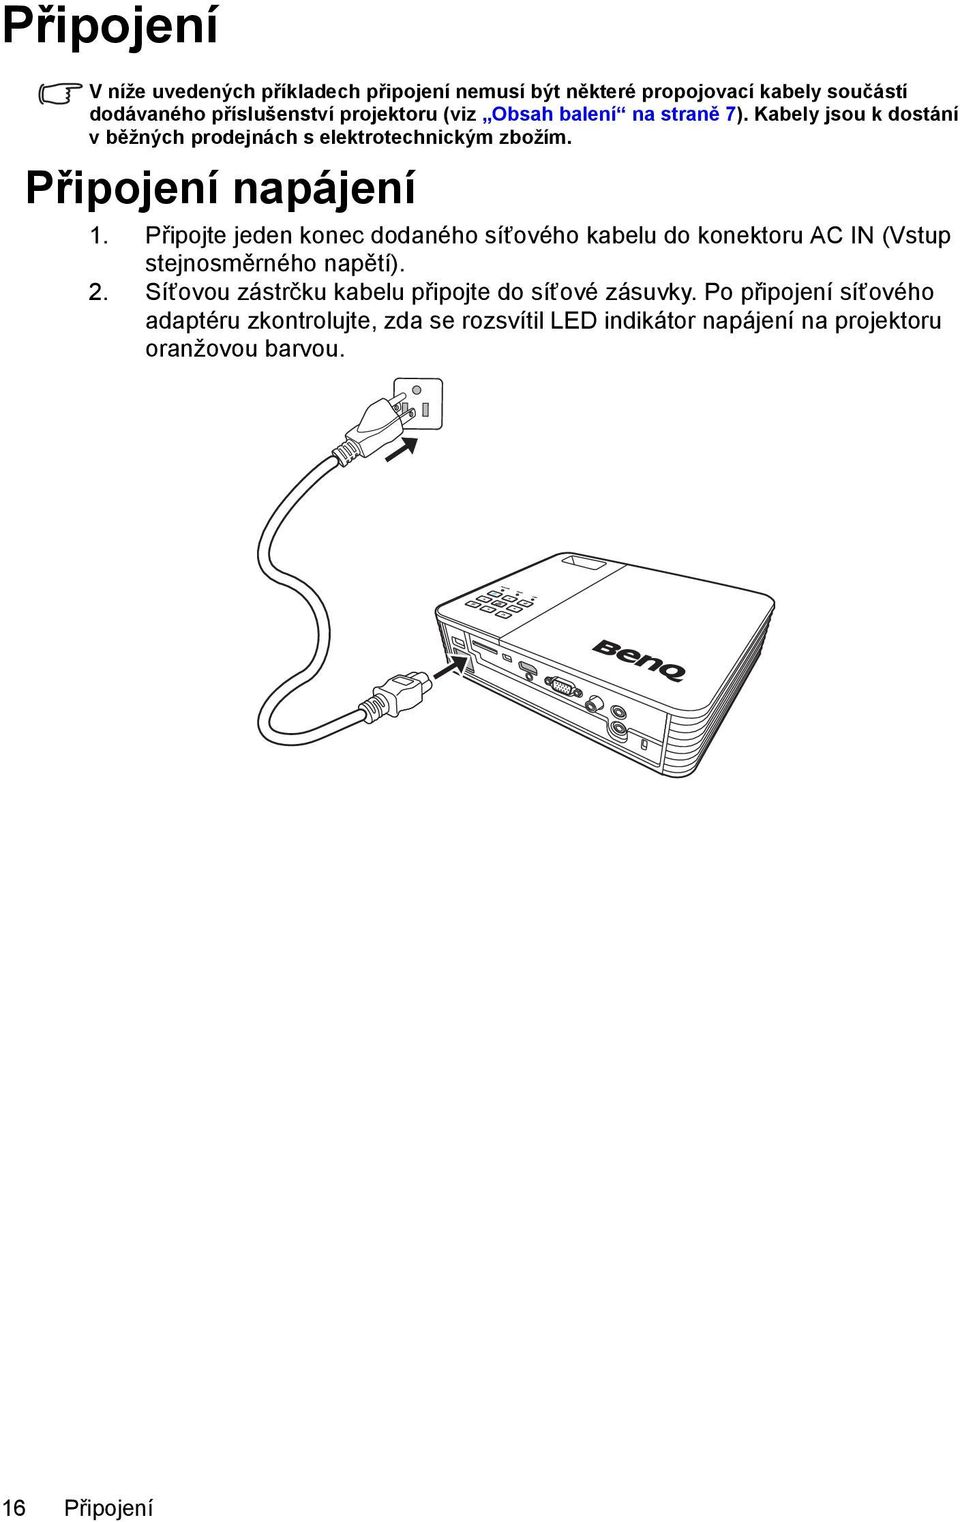 Připojte jeden konec dodaného síťového kabelu do konektoru AC IN (Vstup stejnosměrného napětí). 2.